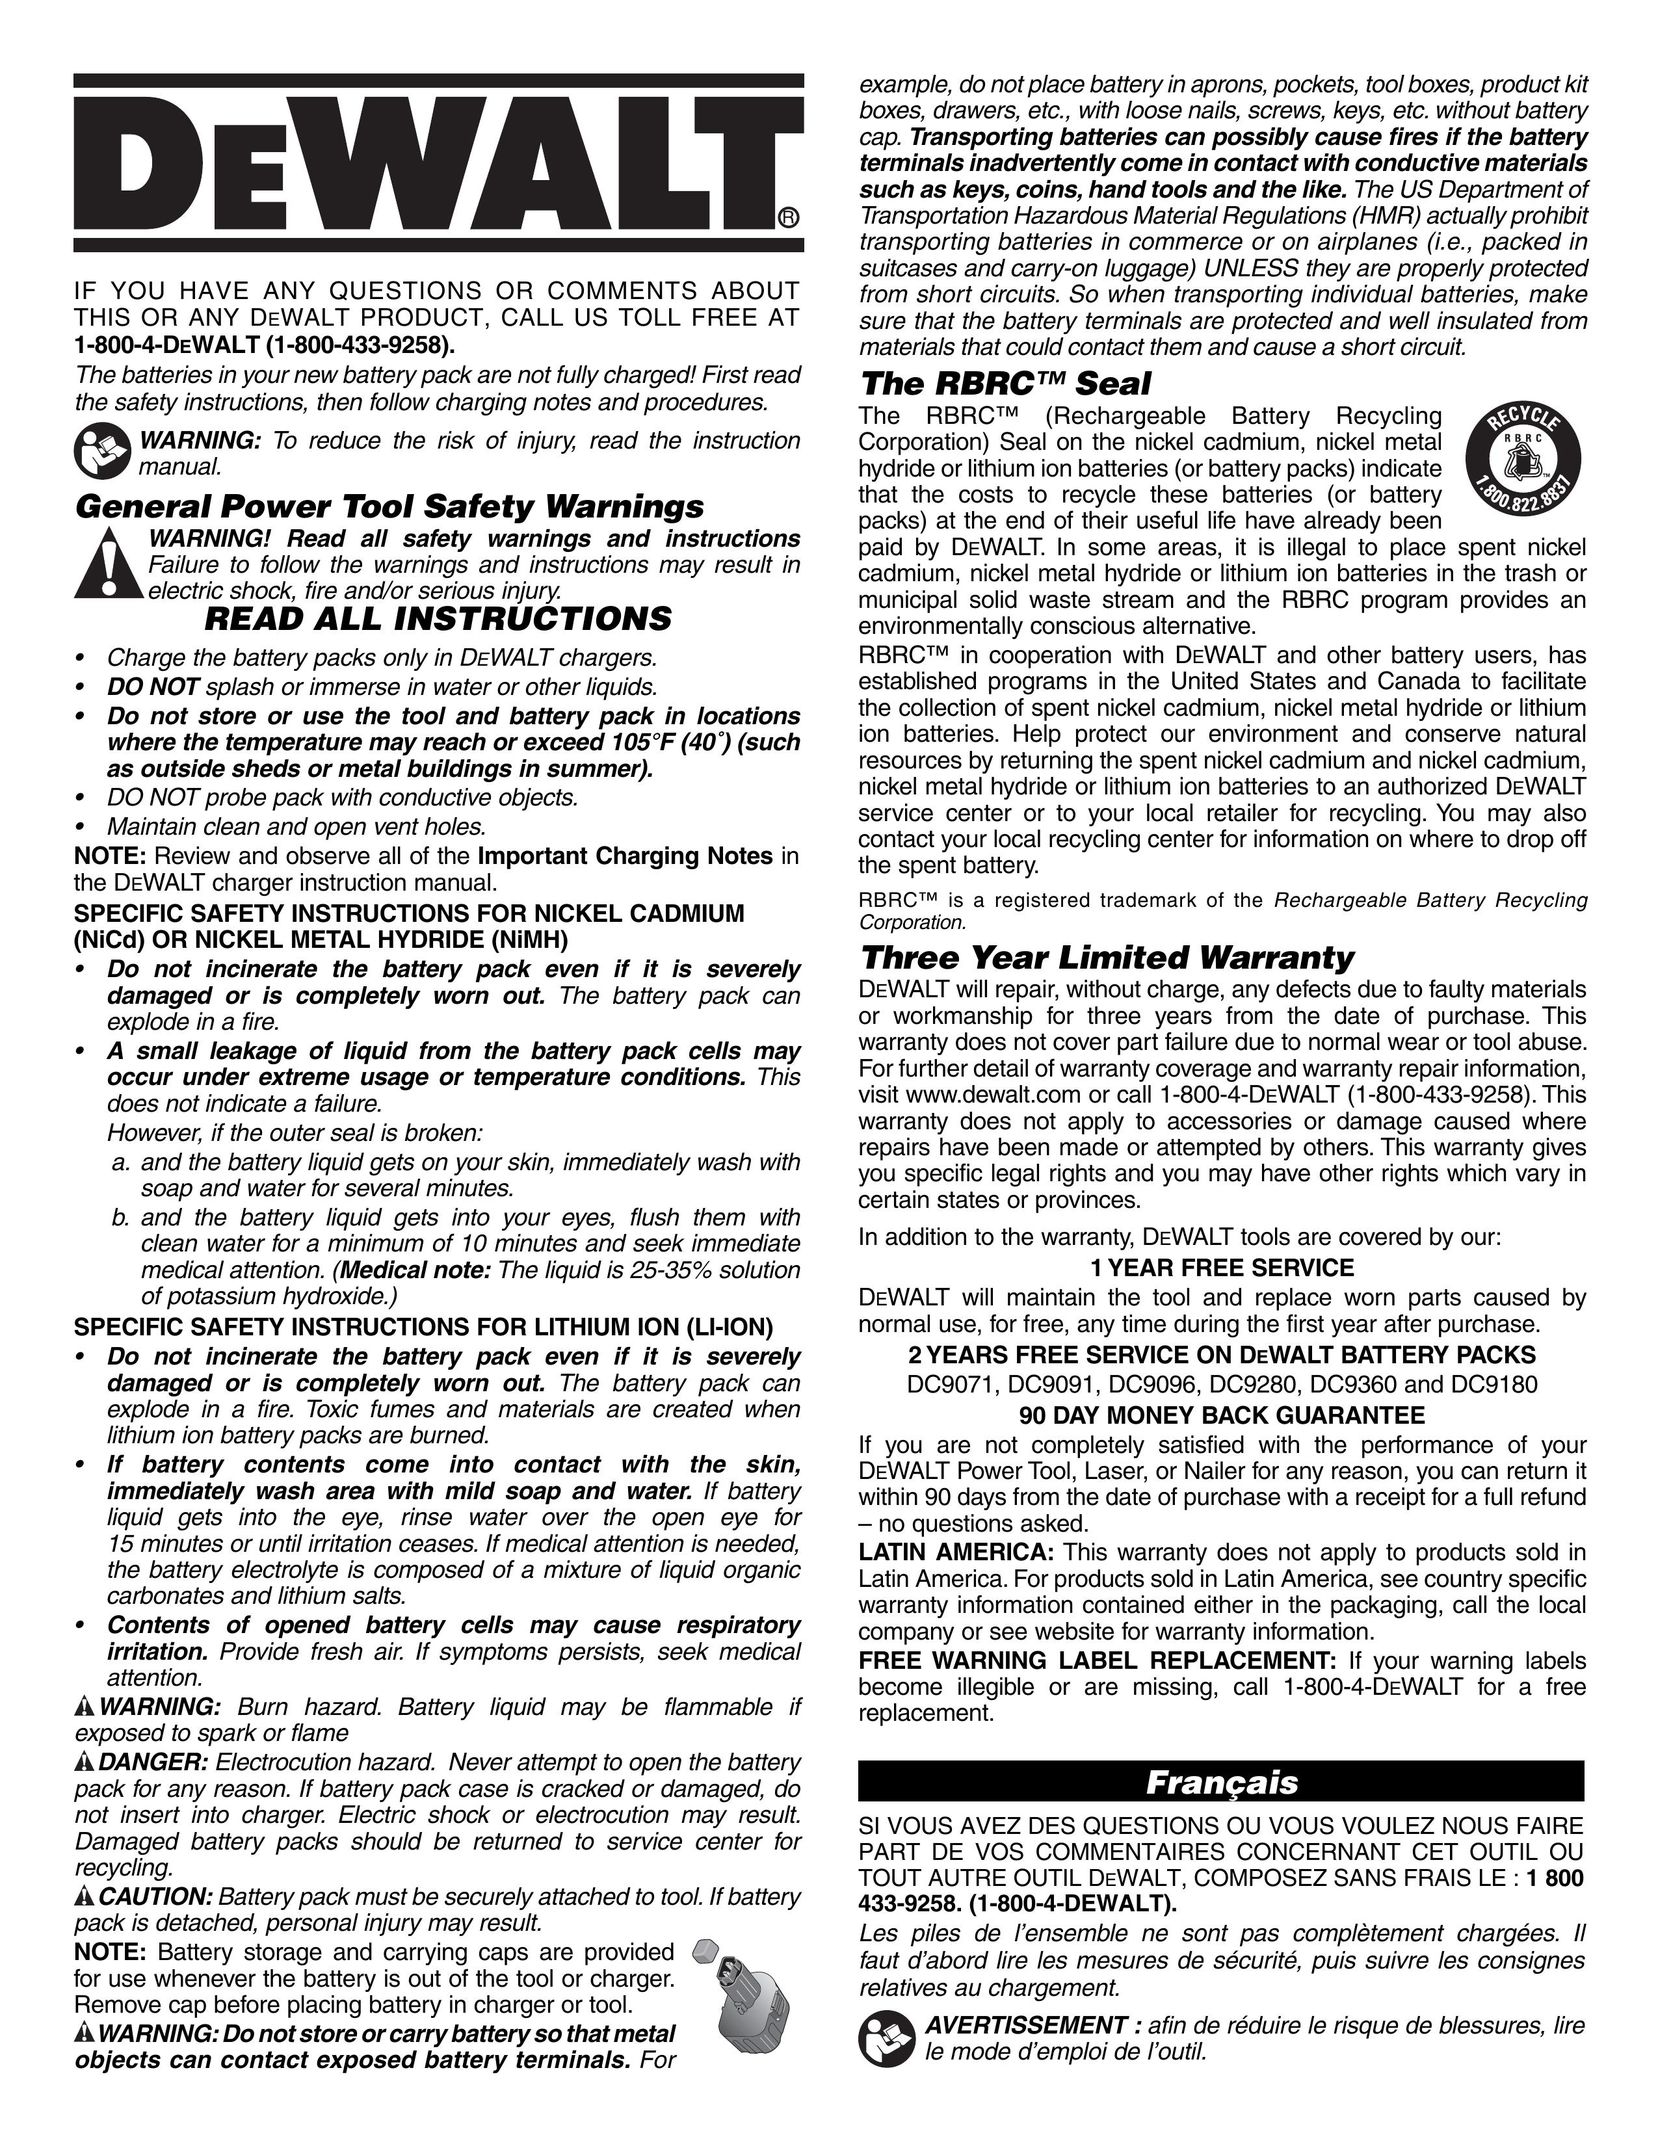 DeWalt DC9180 Battery Charger User Manual